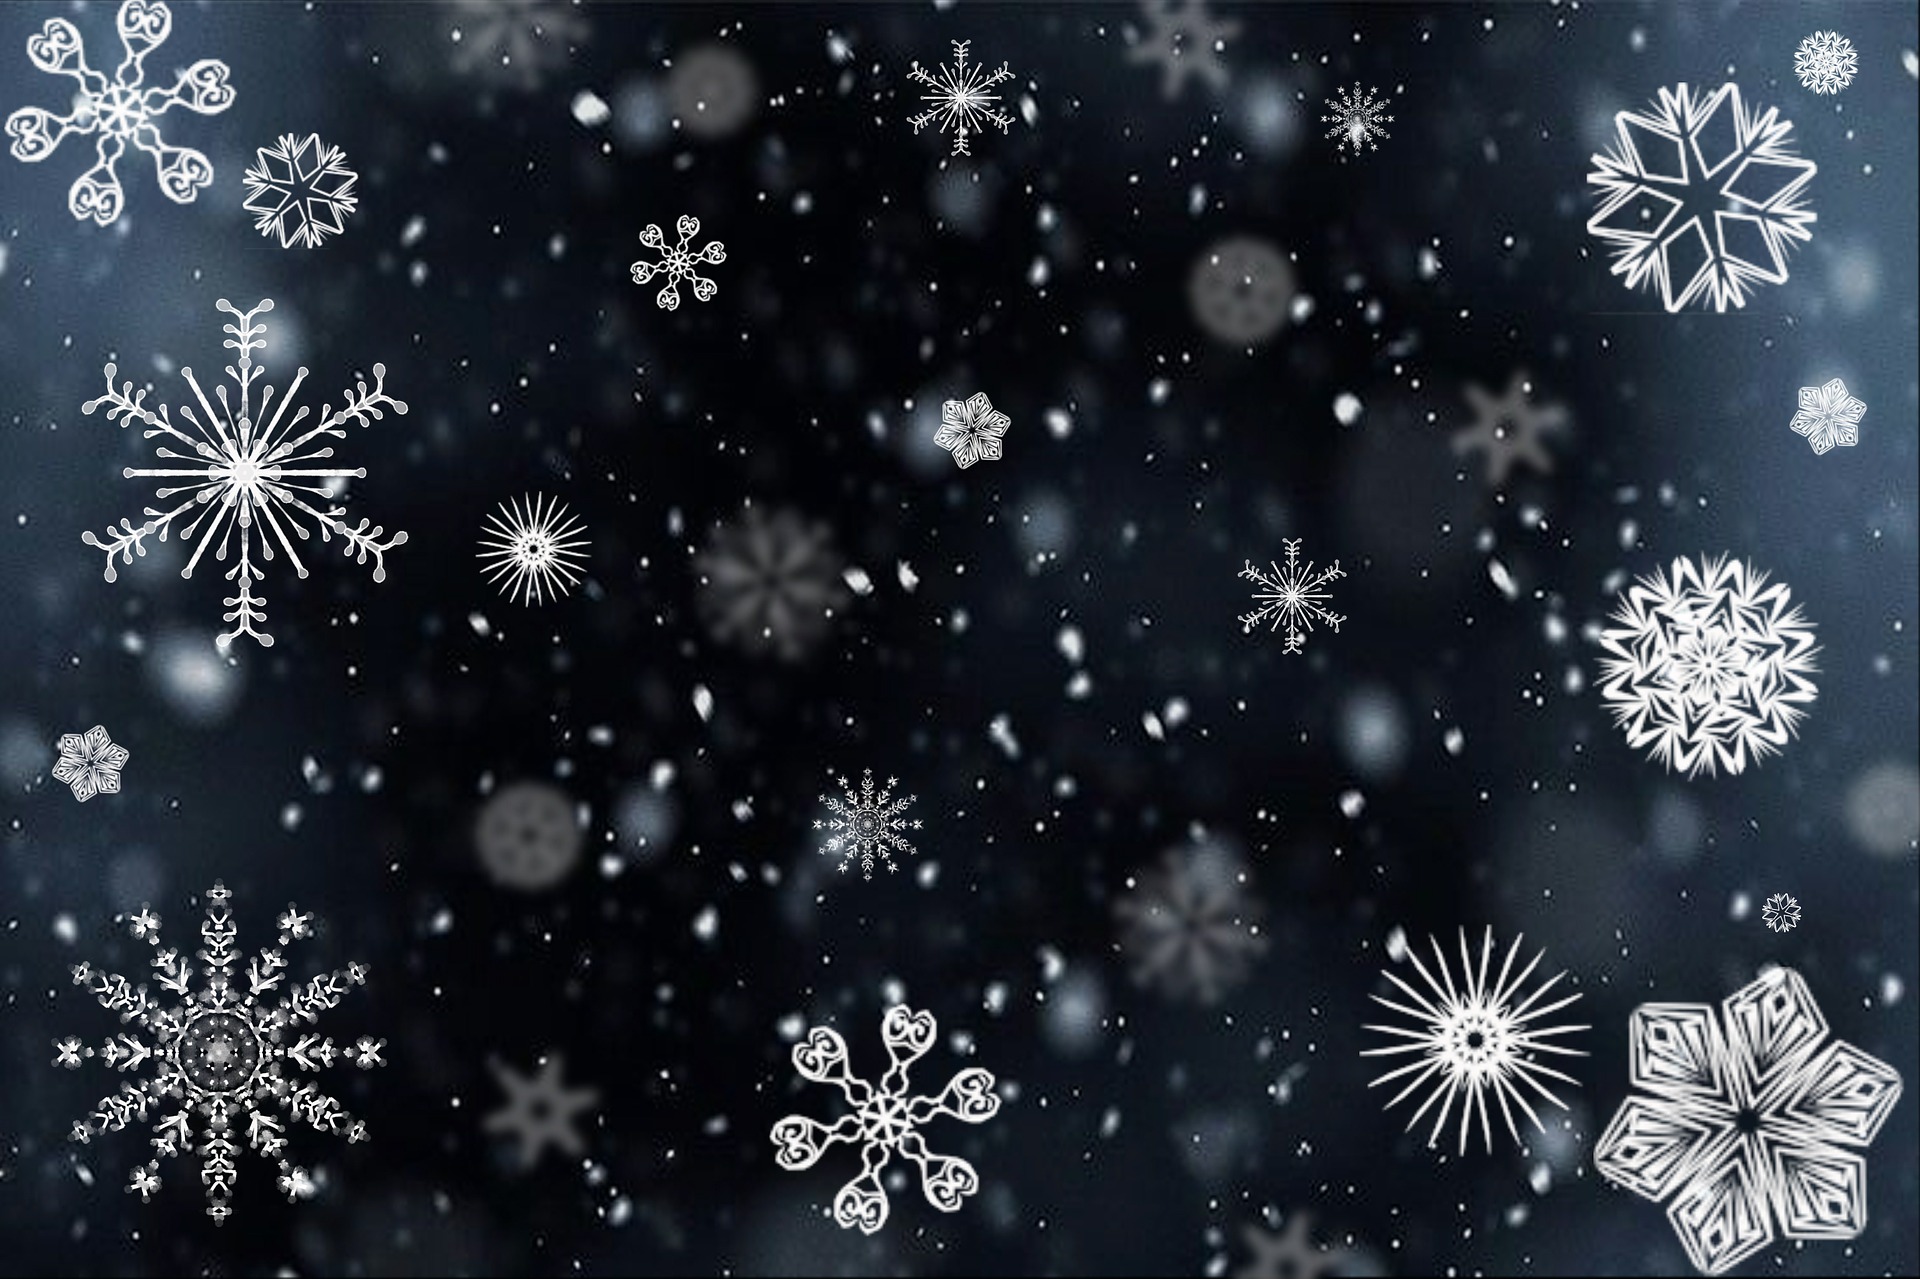 snowflakes-gf4ac2b173_1920.jpg